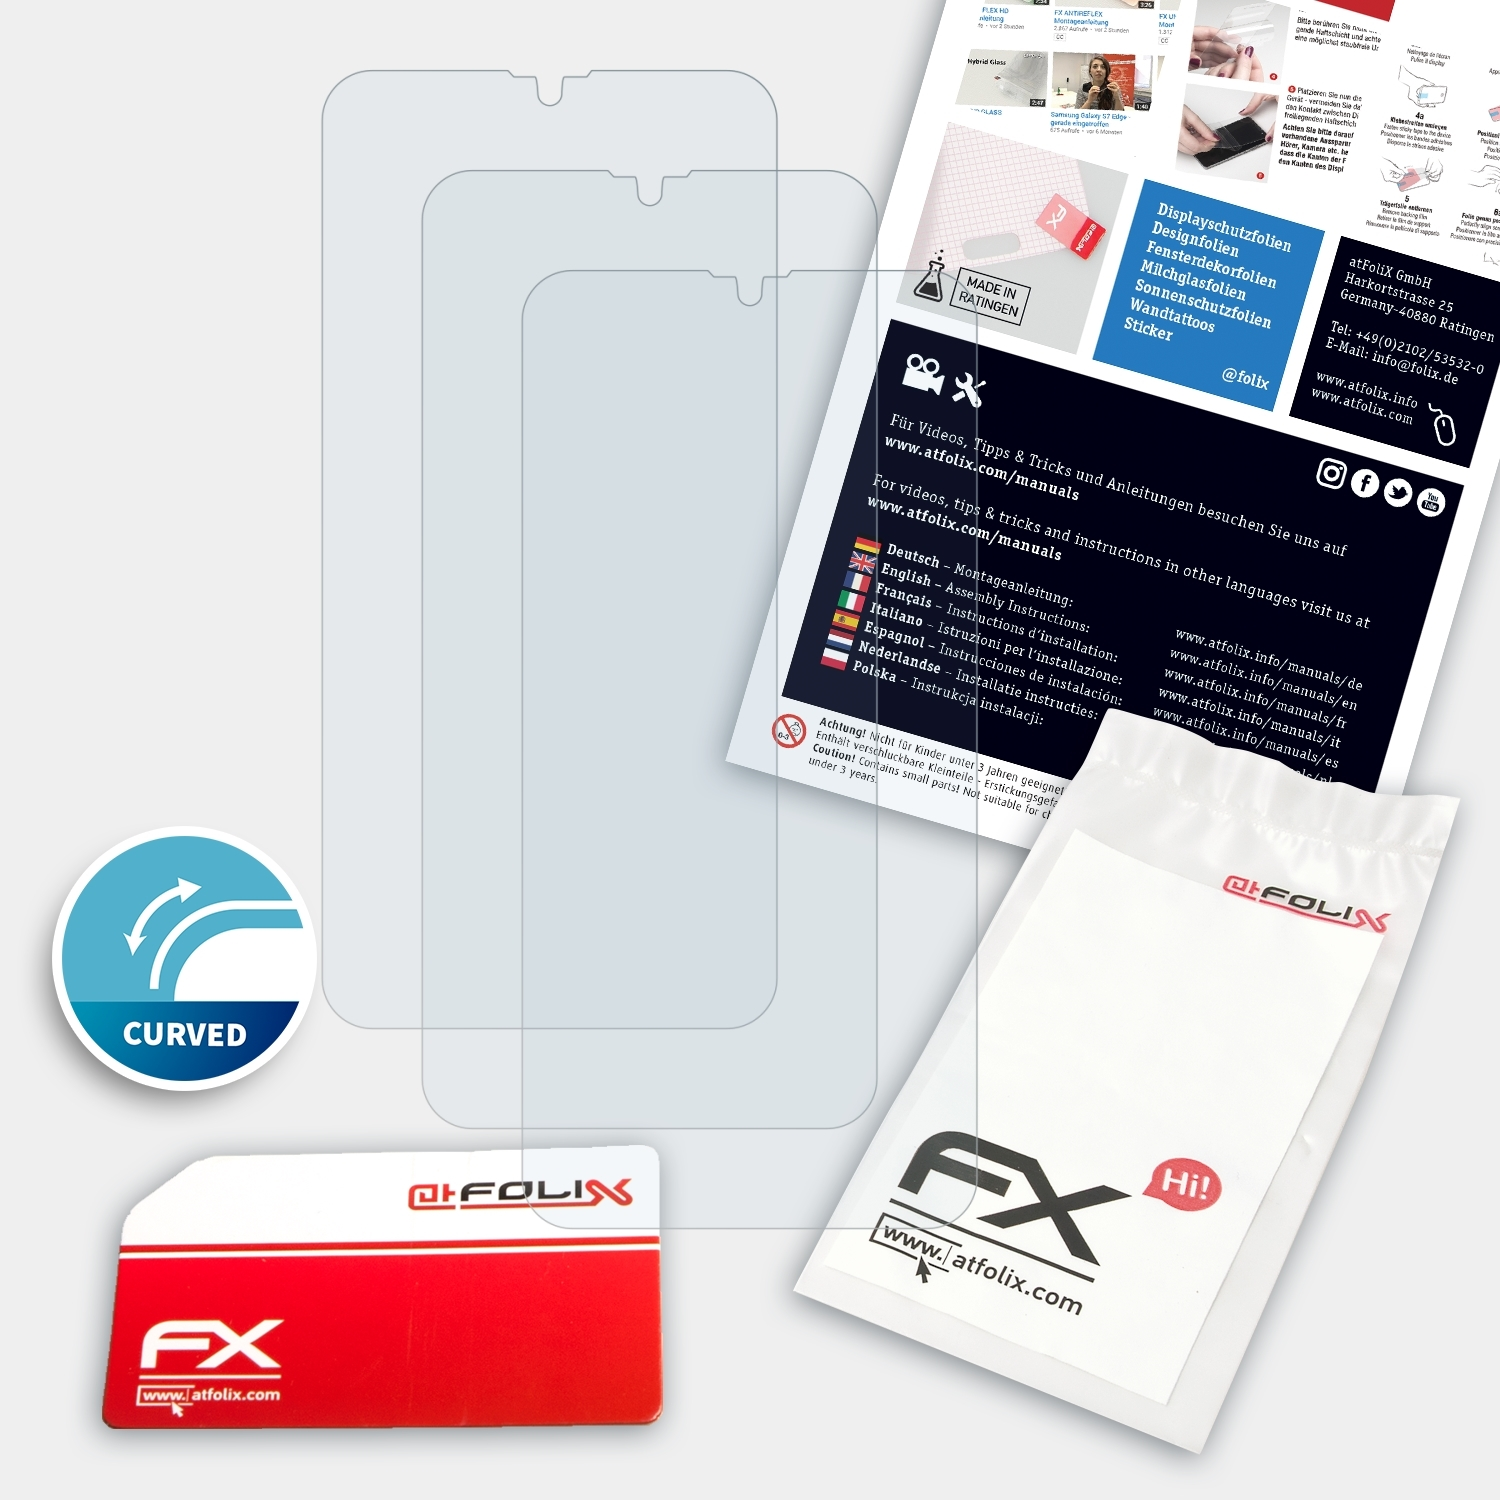 Displayschutz(für FX-ActiFleX Oppo A5s) ATFOLIX 3x